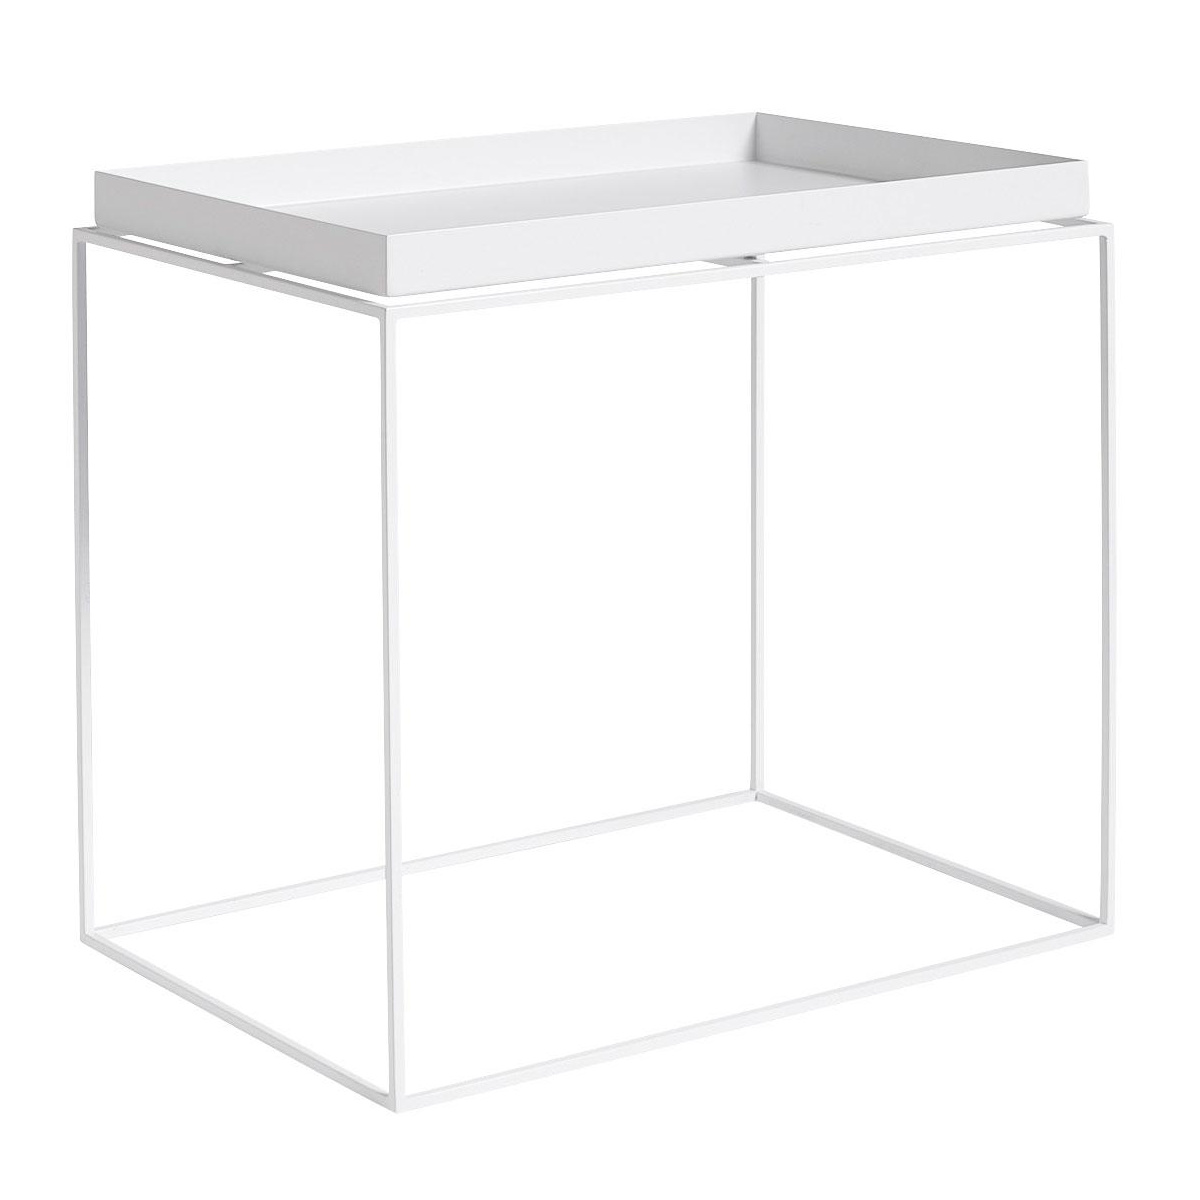 HAY - Table d'appoint Tray L - blanc/revtu par poudre/LxlxH 40x60x54cm